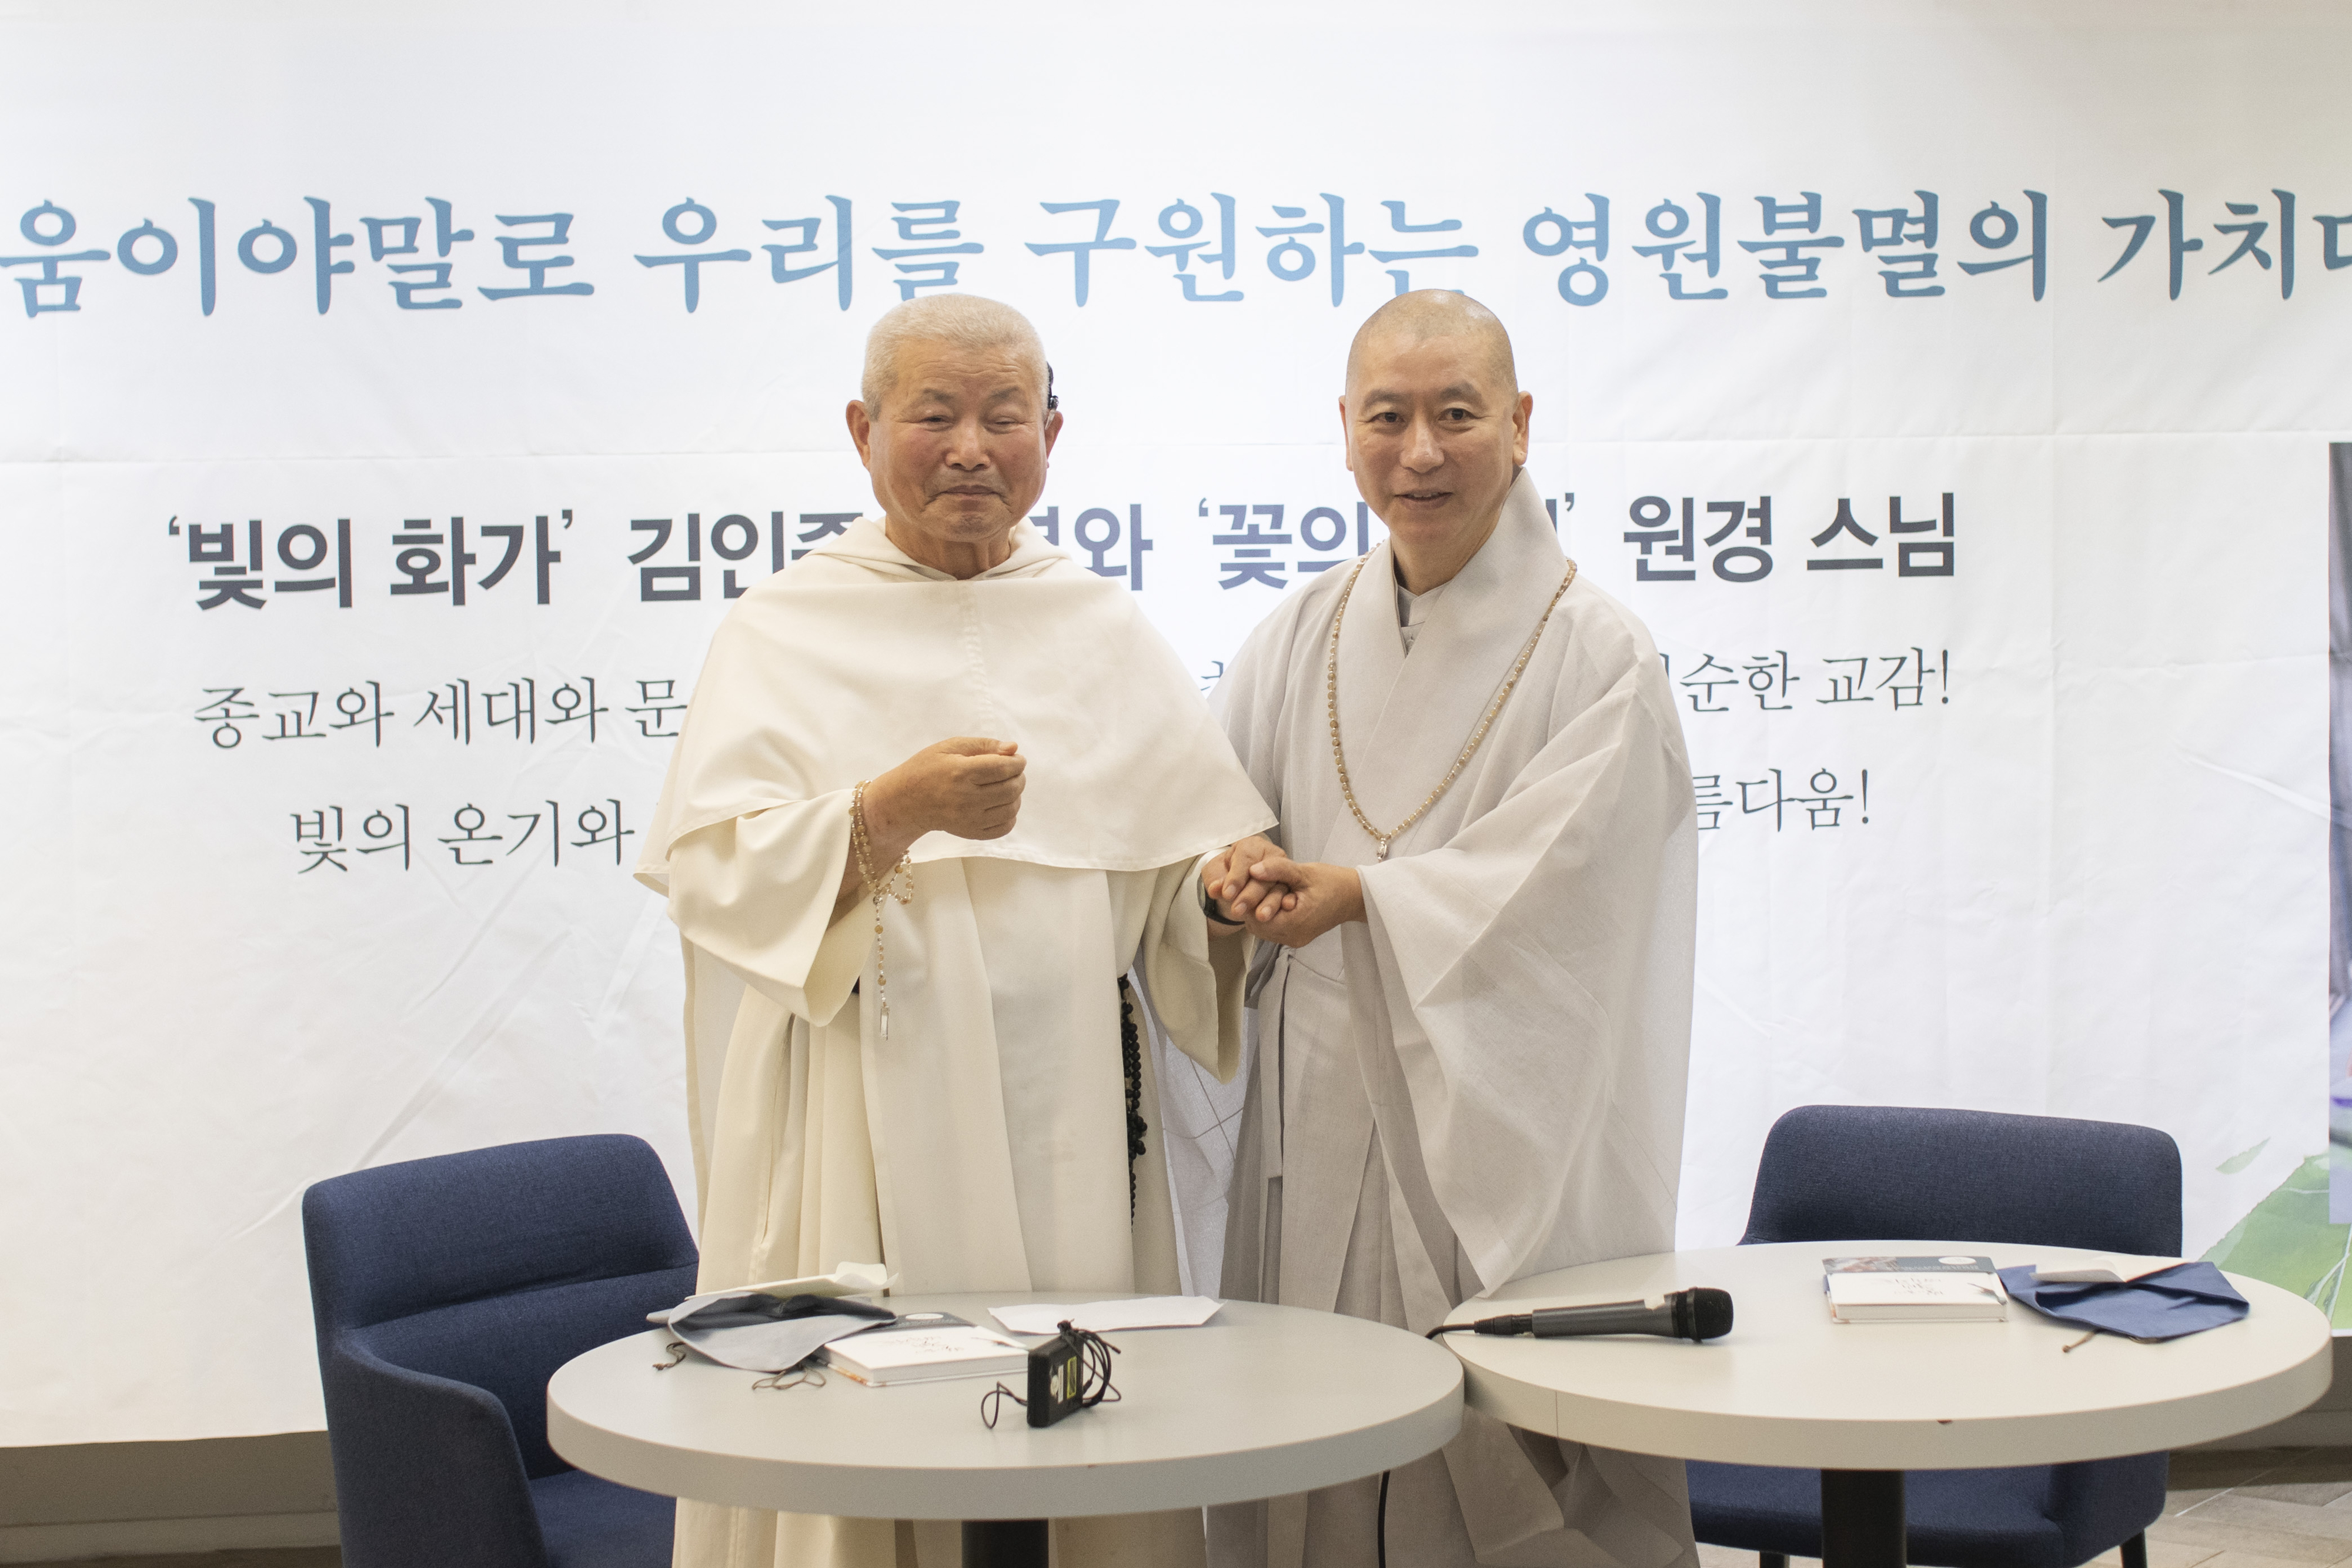 김 신부와 원경 스님은 28일 서울 마포구 한 카페에서 함께 낸 책을 소개하는 간담회를 끝낸 뒤 묵주와 염주를 서로에게 선물했다. 류재민 기자